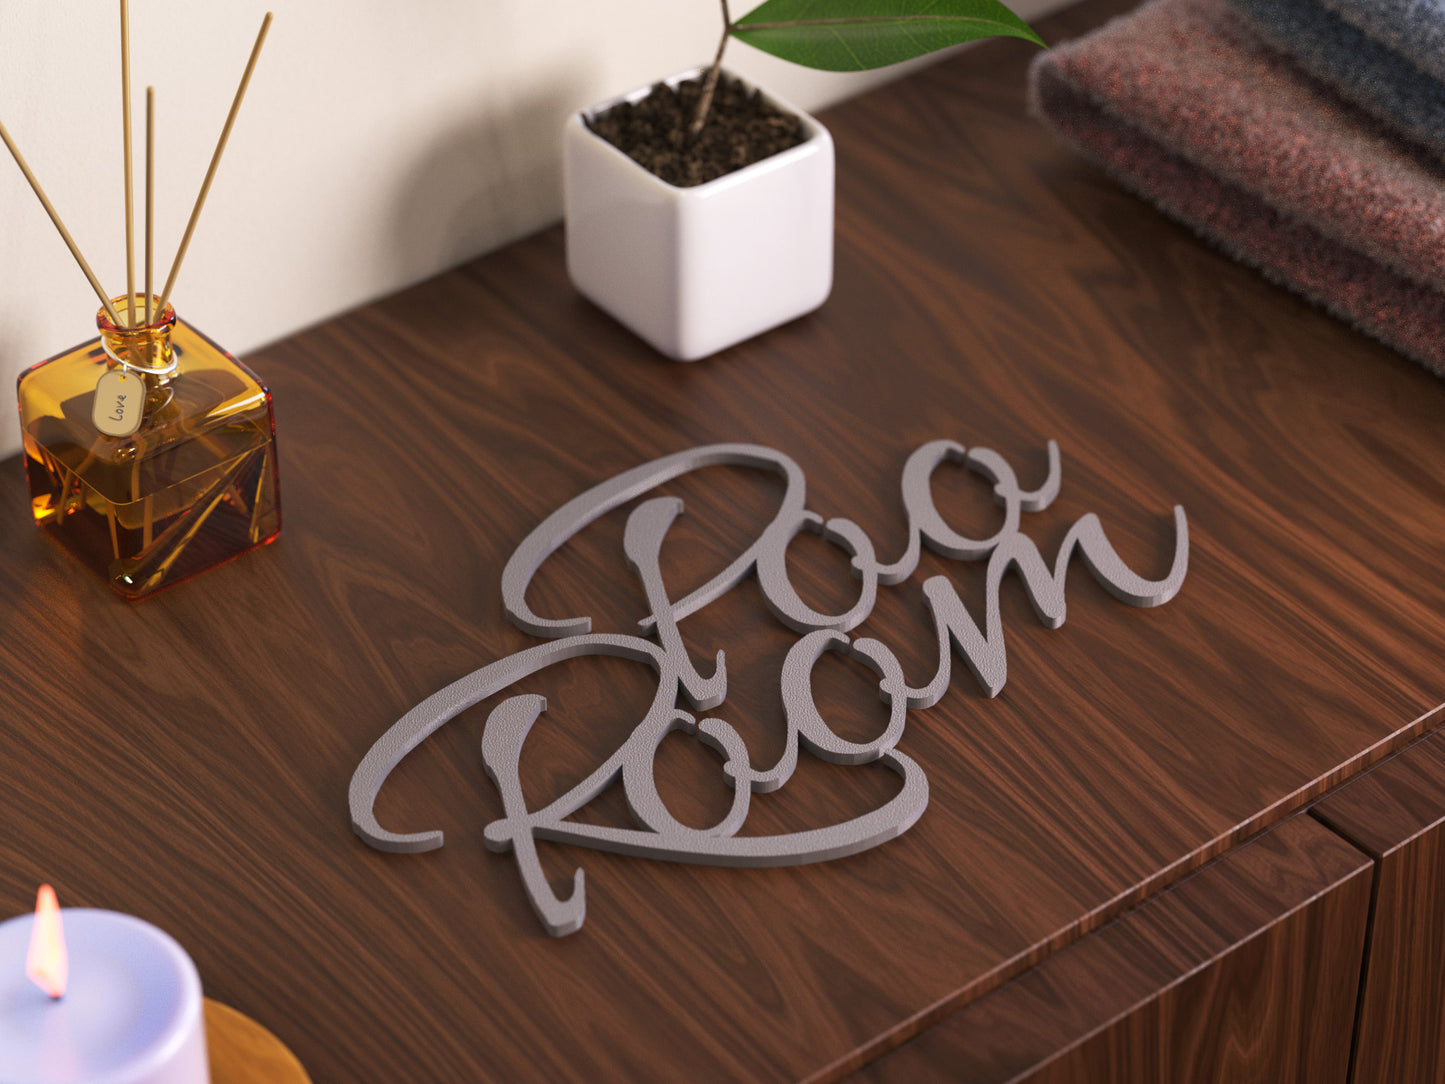 Poo Room Türschild 3D Schriftzüge Selbstklebend